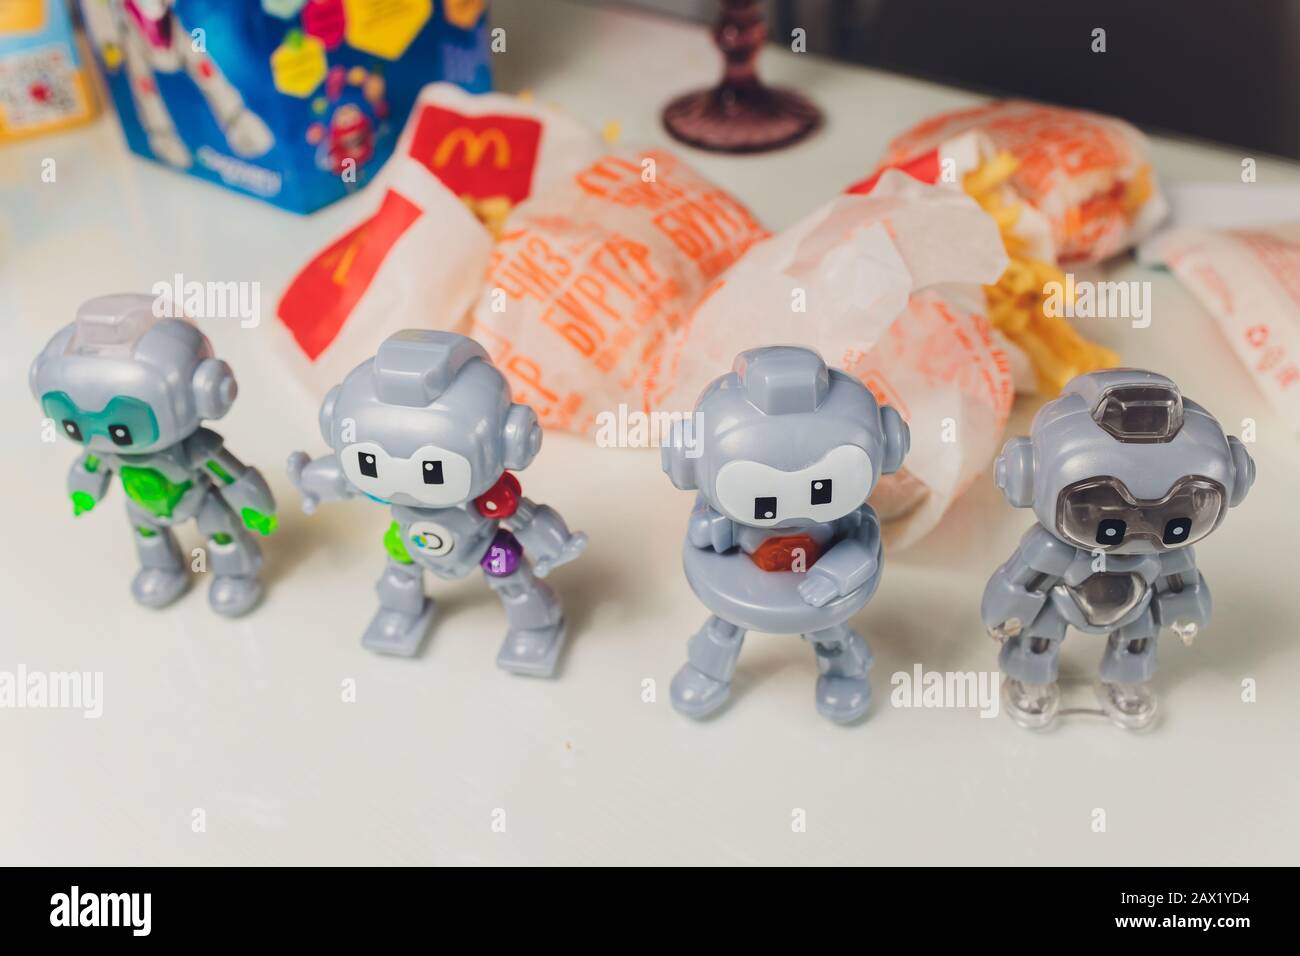 Mcdonalds happy meal toy from fotografías e imágenes de alta resolución -  Alamy